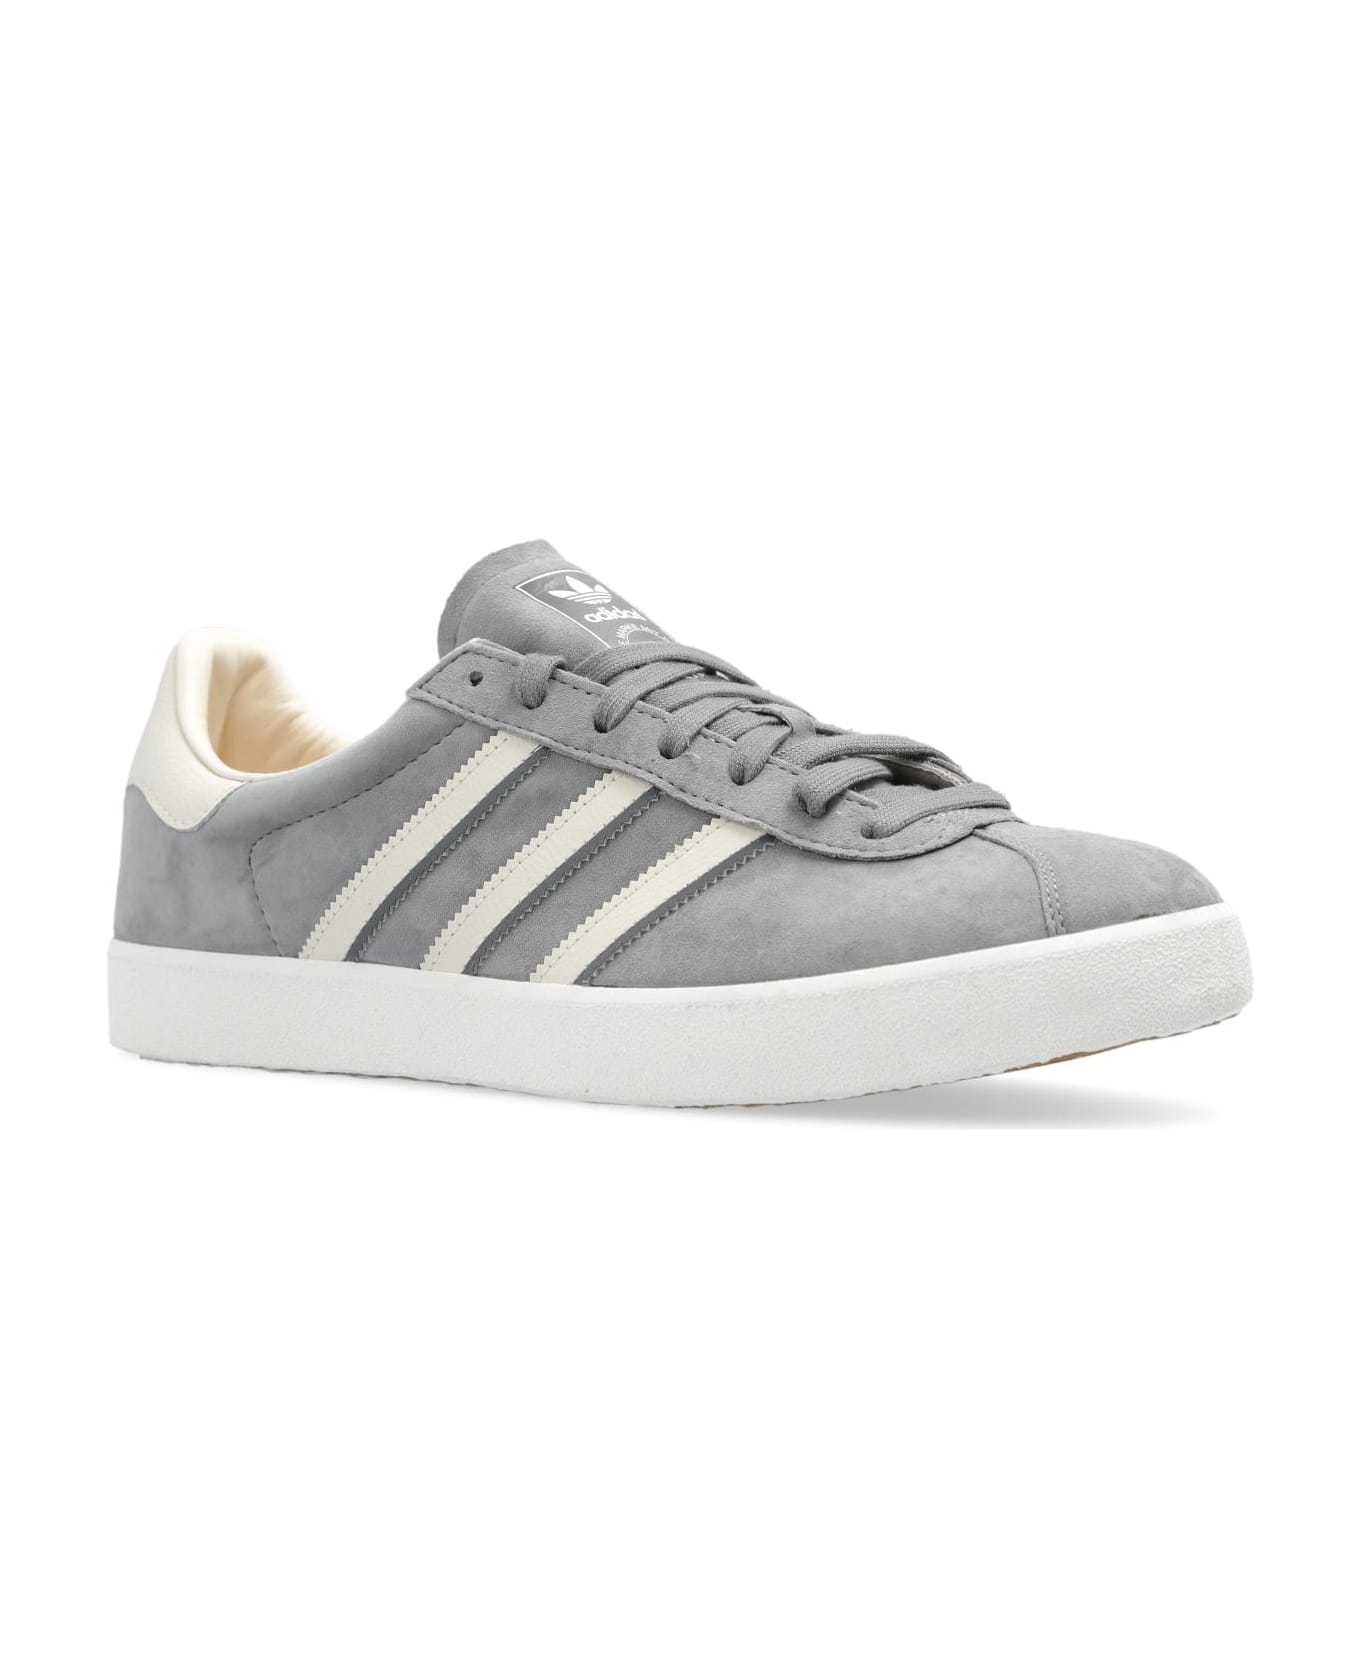 Adidas Originals 'gazelle 85' Sneakers - Grey